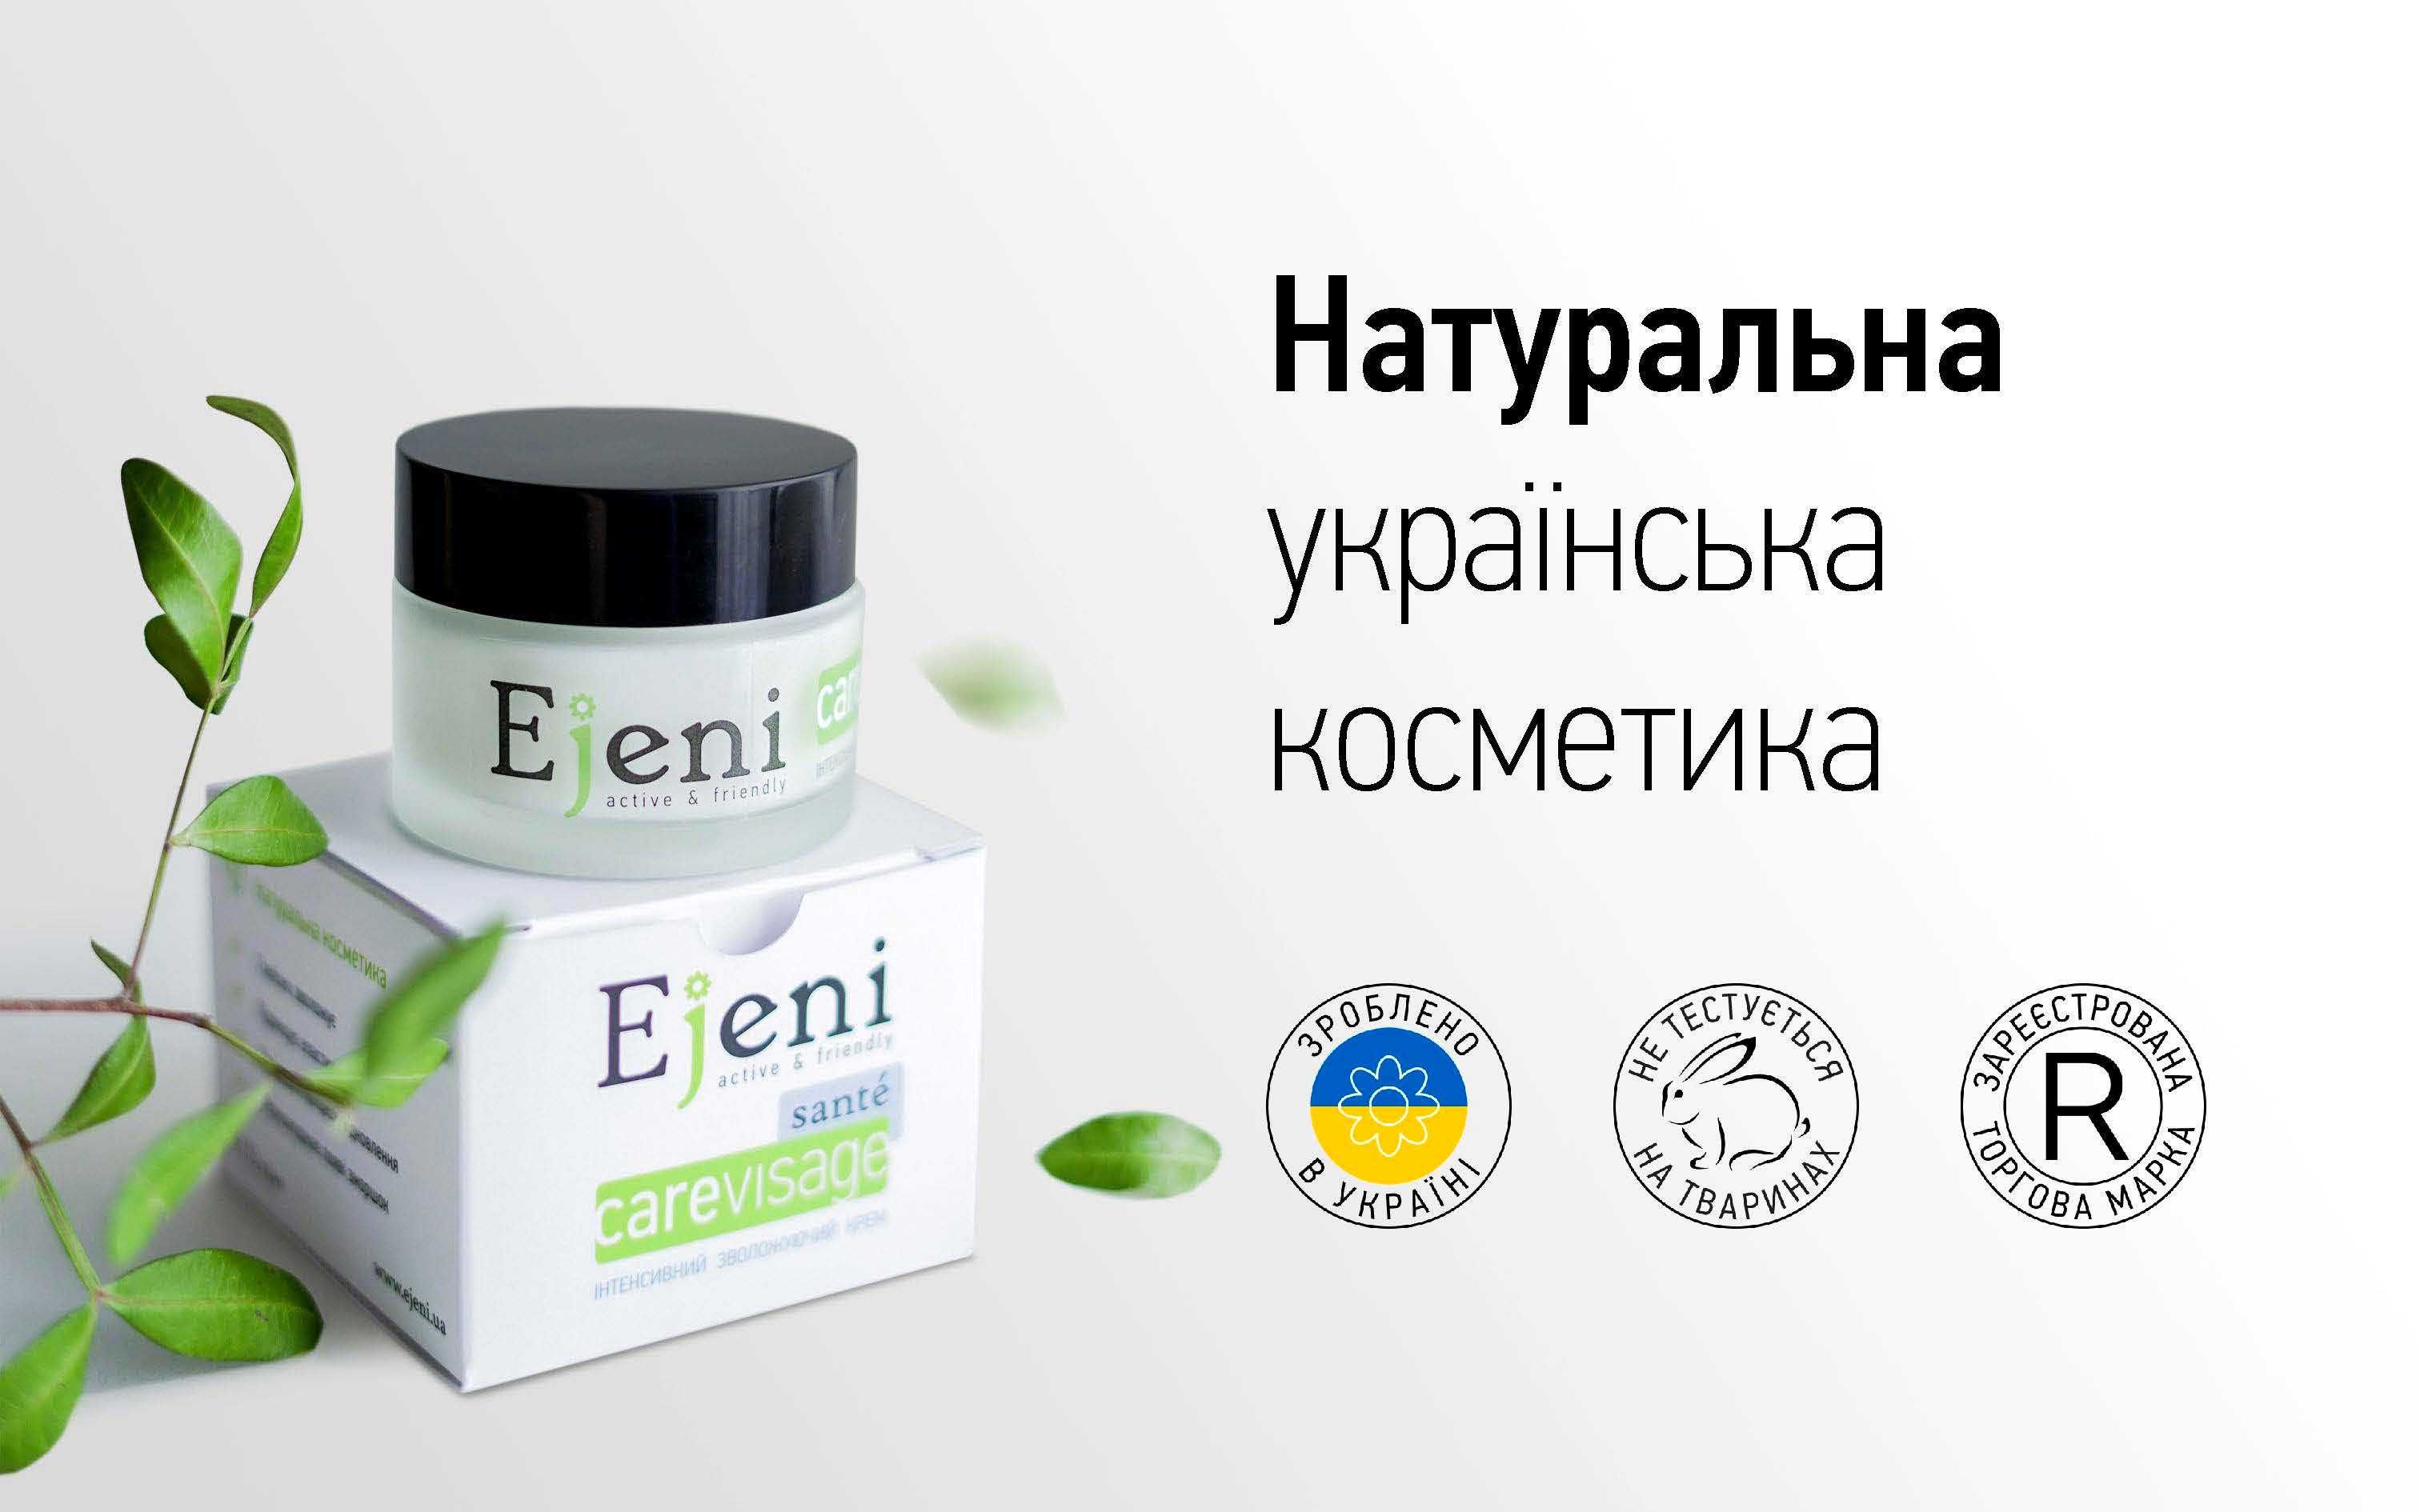 Продам бренд натуральної косметики Ejeni (зареєстрована ТМ)